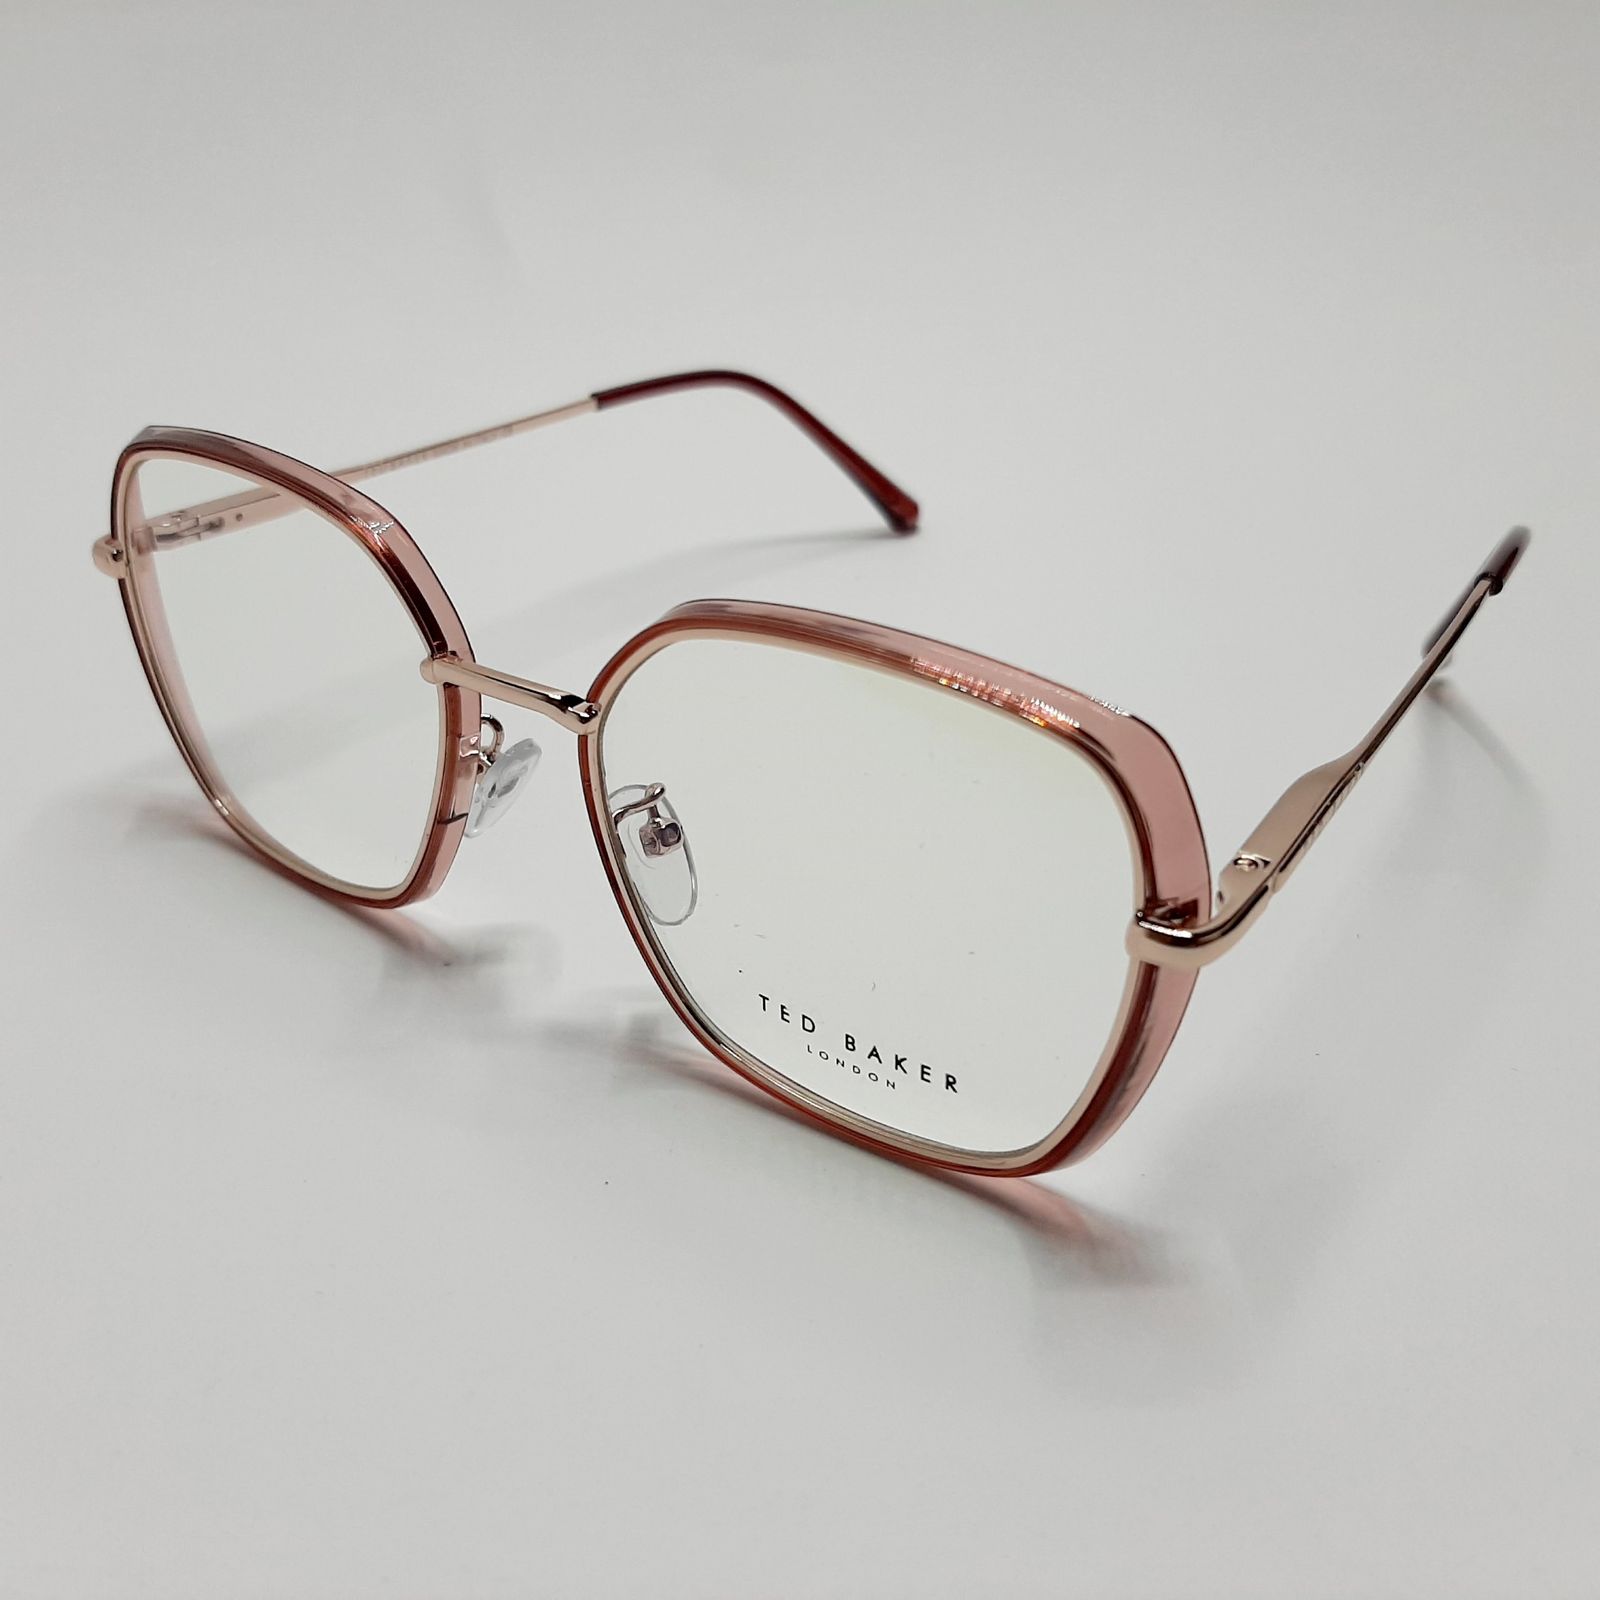 فریم عینک طبی تد بیکر مدل 95583c2 -  - 4